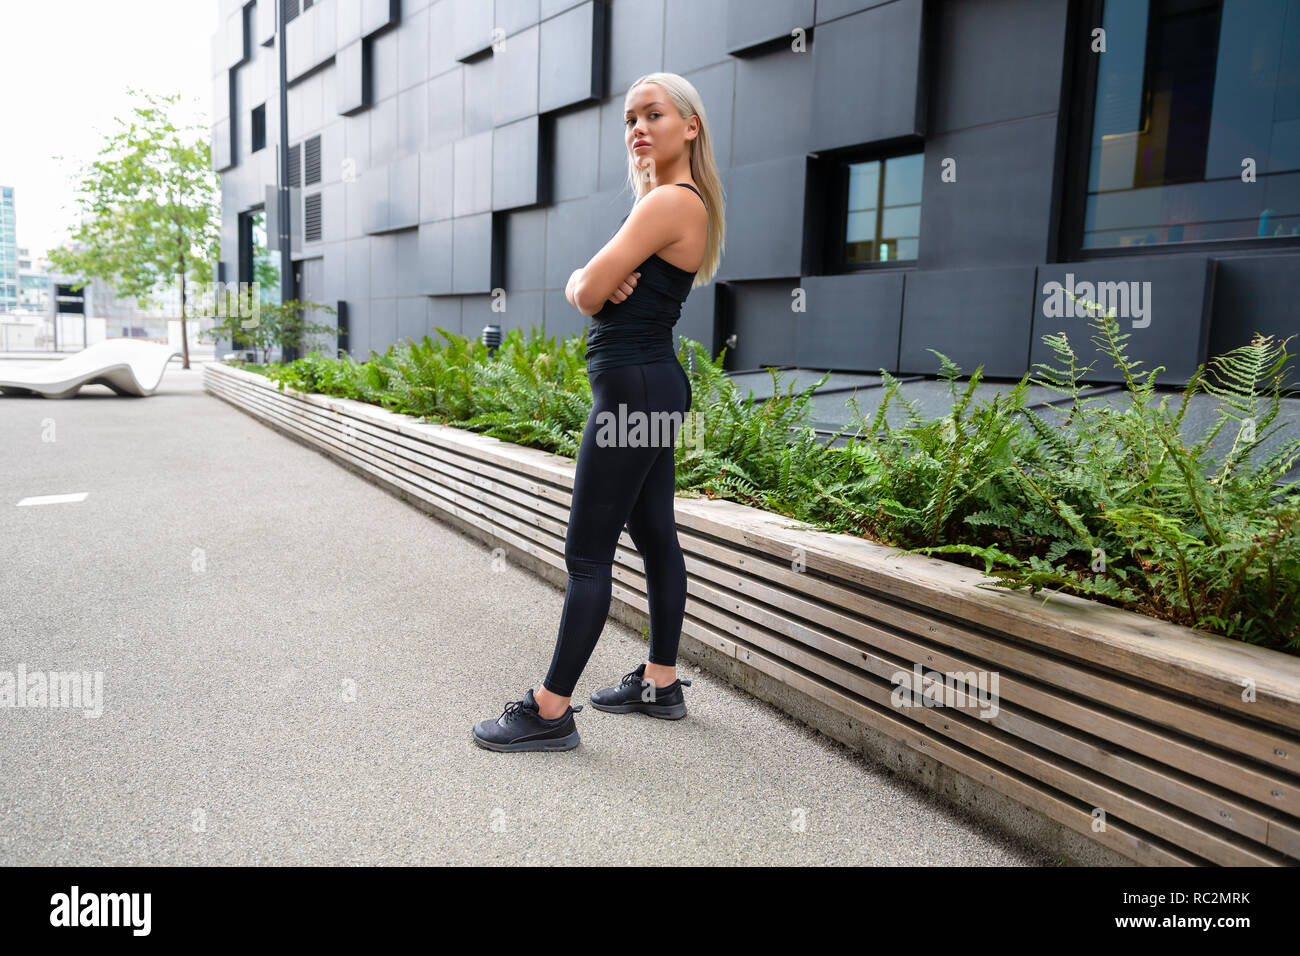 Zuversichtlich, dass weibliche Urban Runner Stehen mit verschränkten Armen Stockfoto